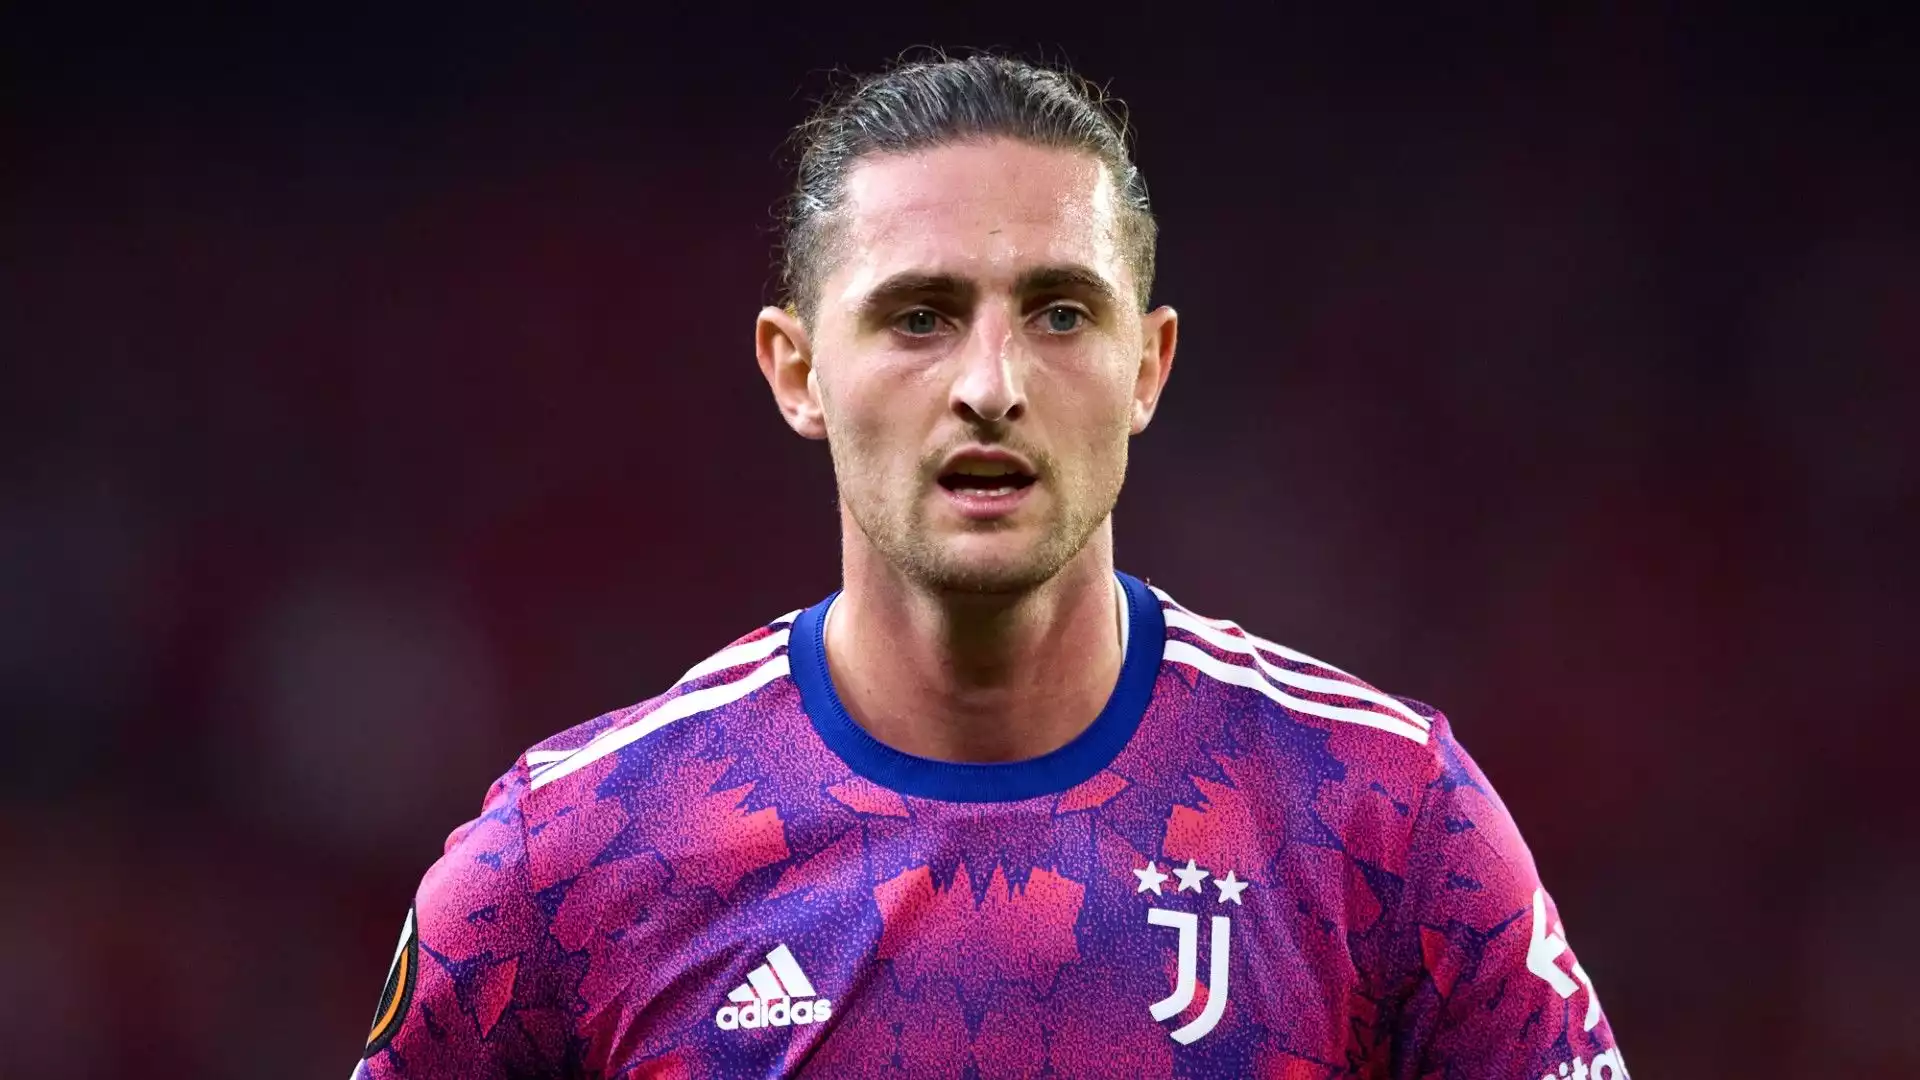 Arrivato alla Juventus nel 2019, l'esperienza del centrocampista in Italia sembra essere finita